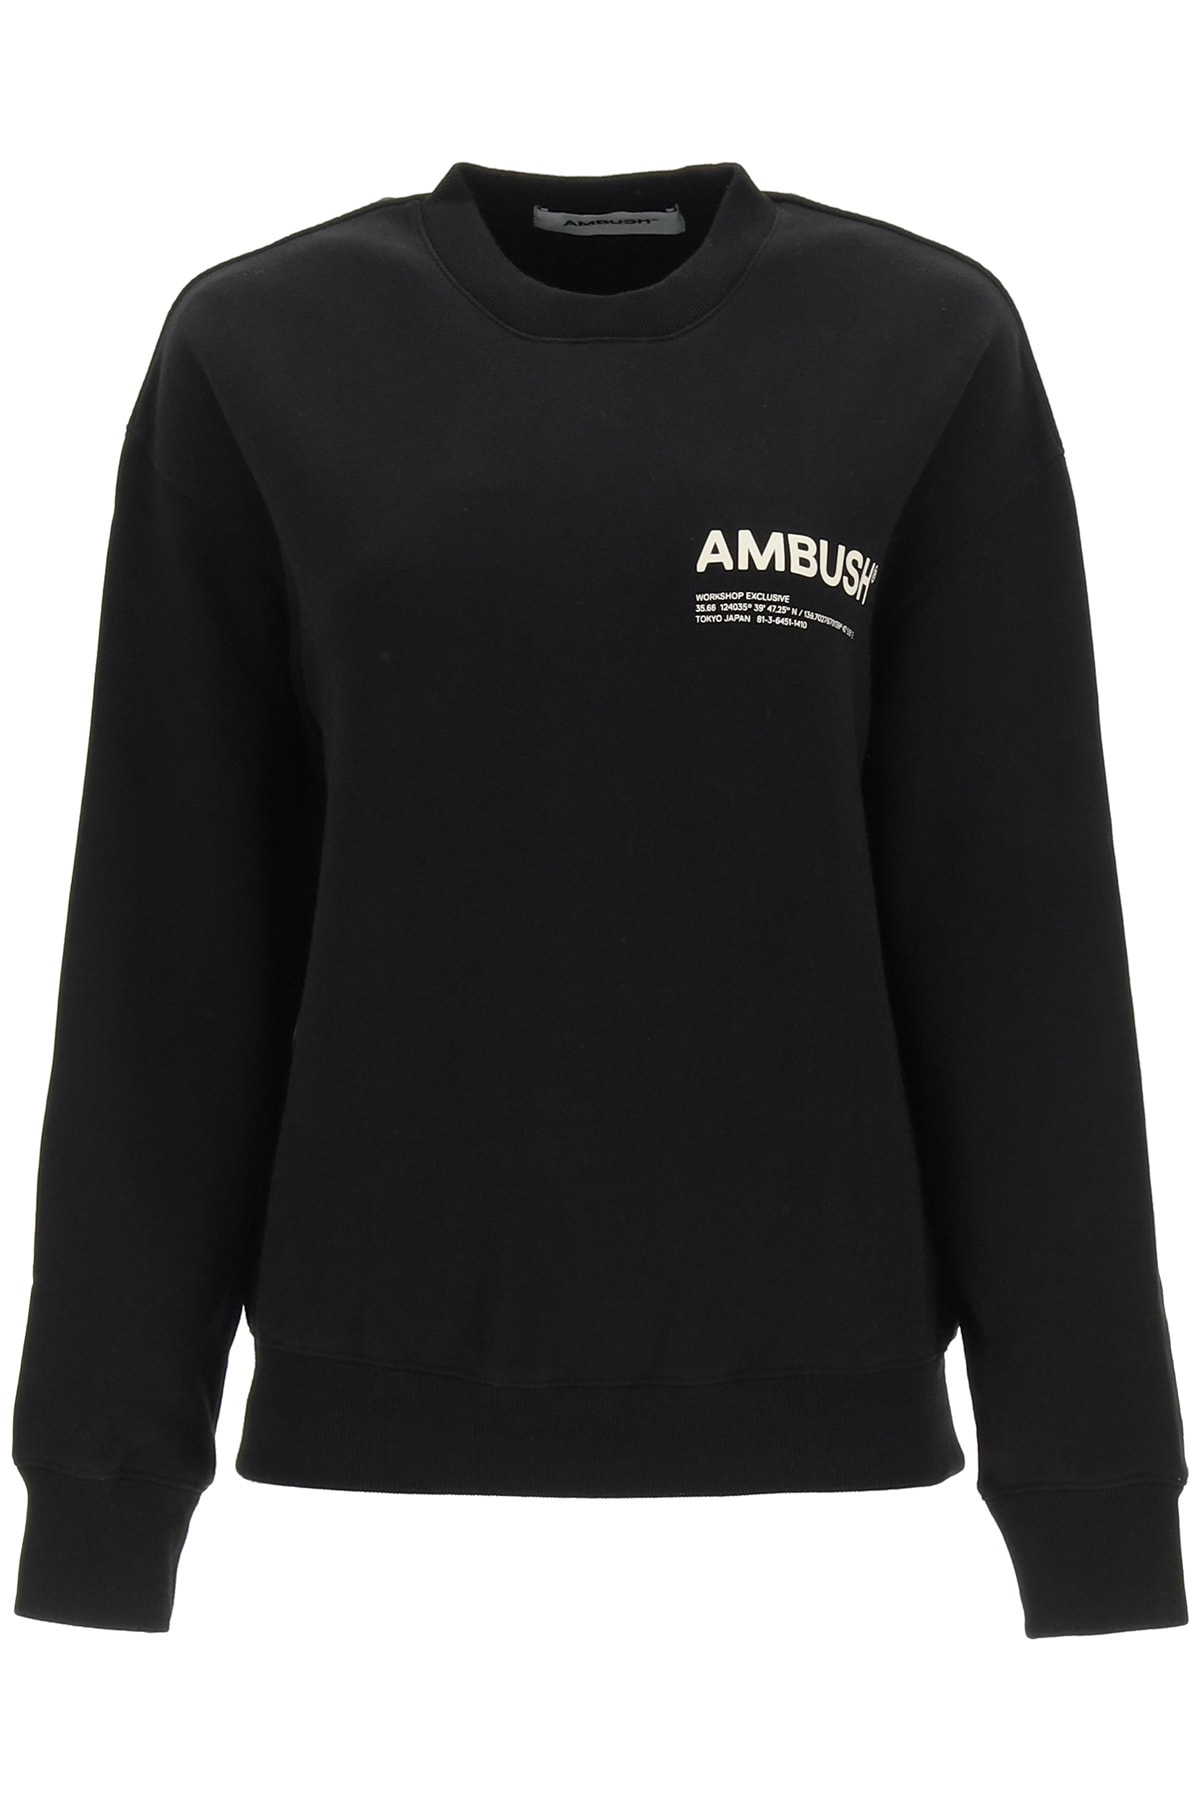 AMBUSH Crewneck Sweatshirt